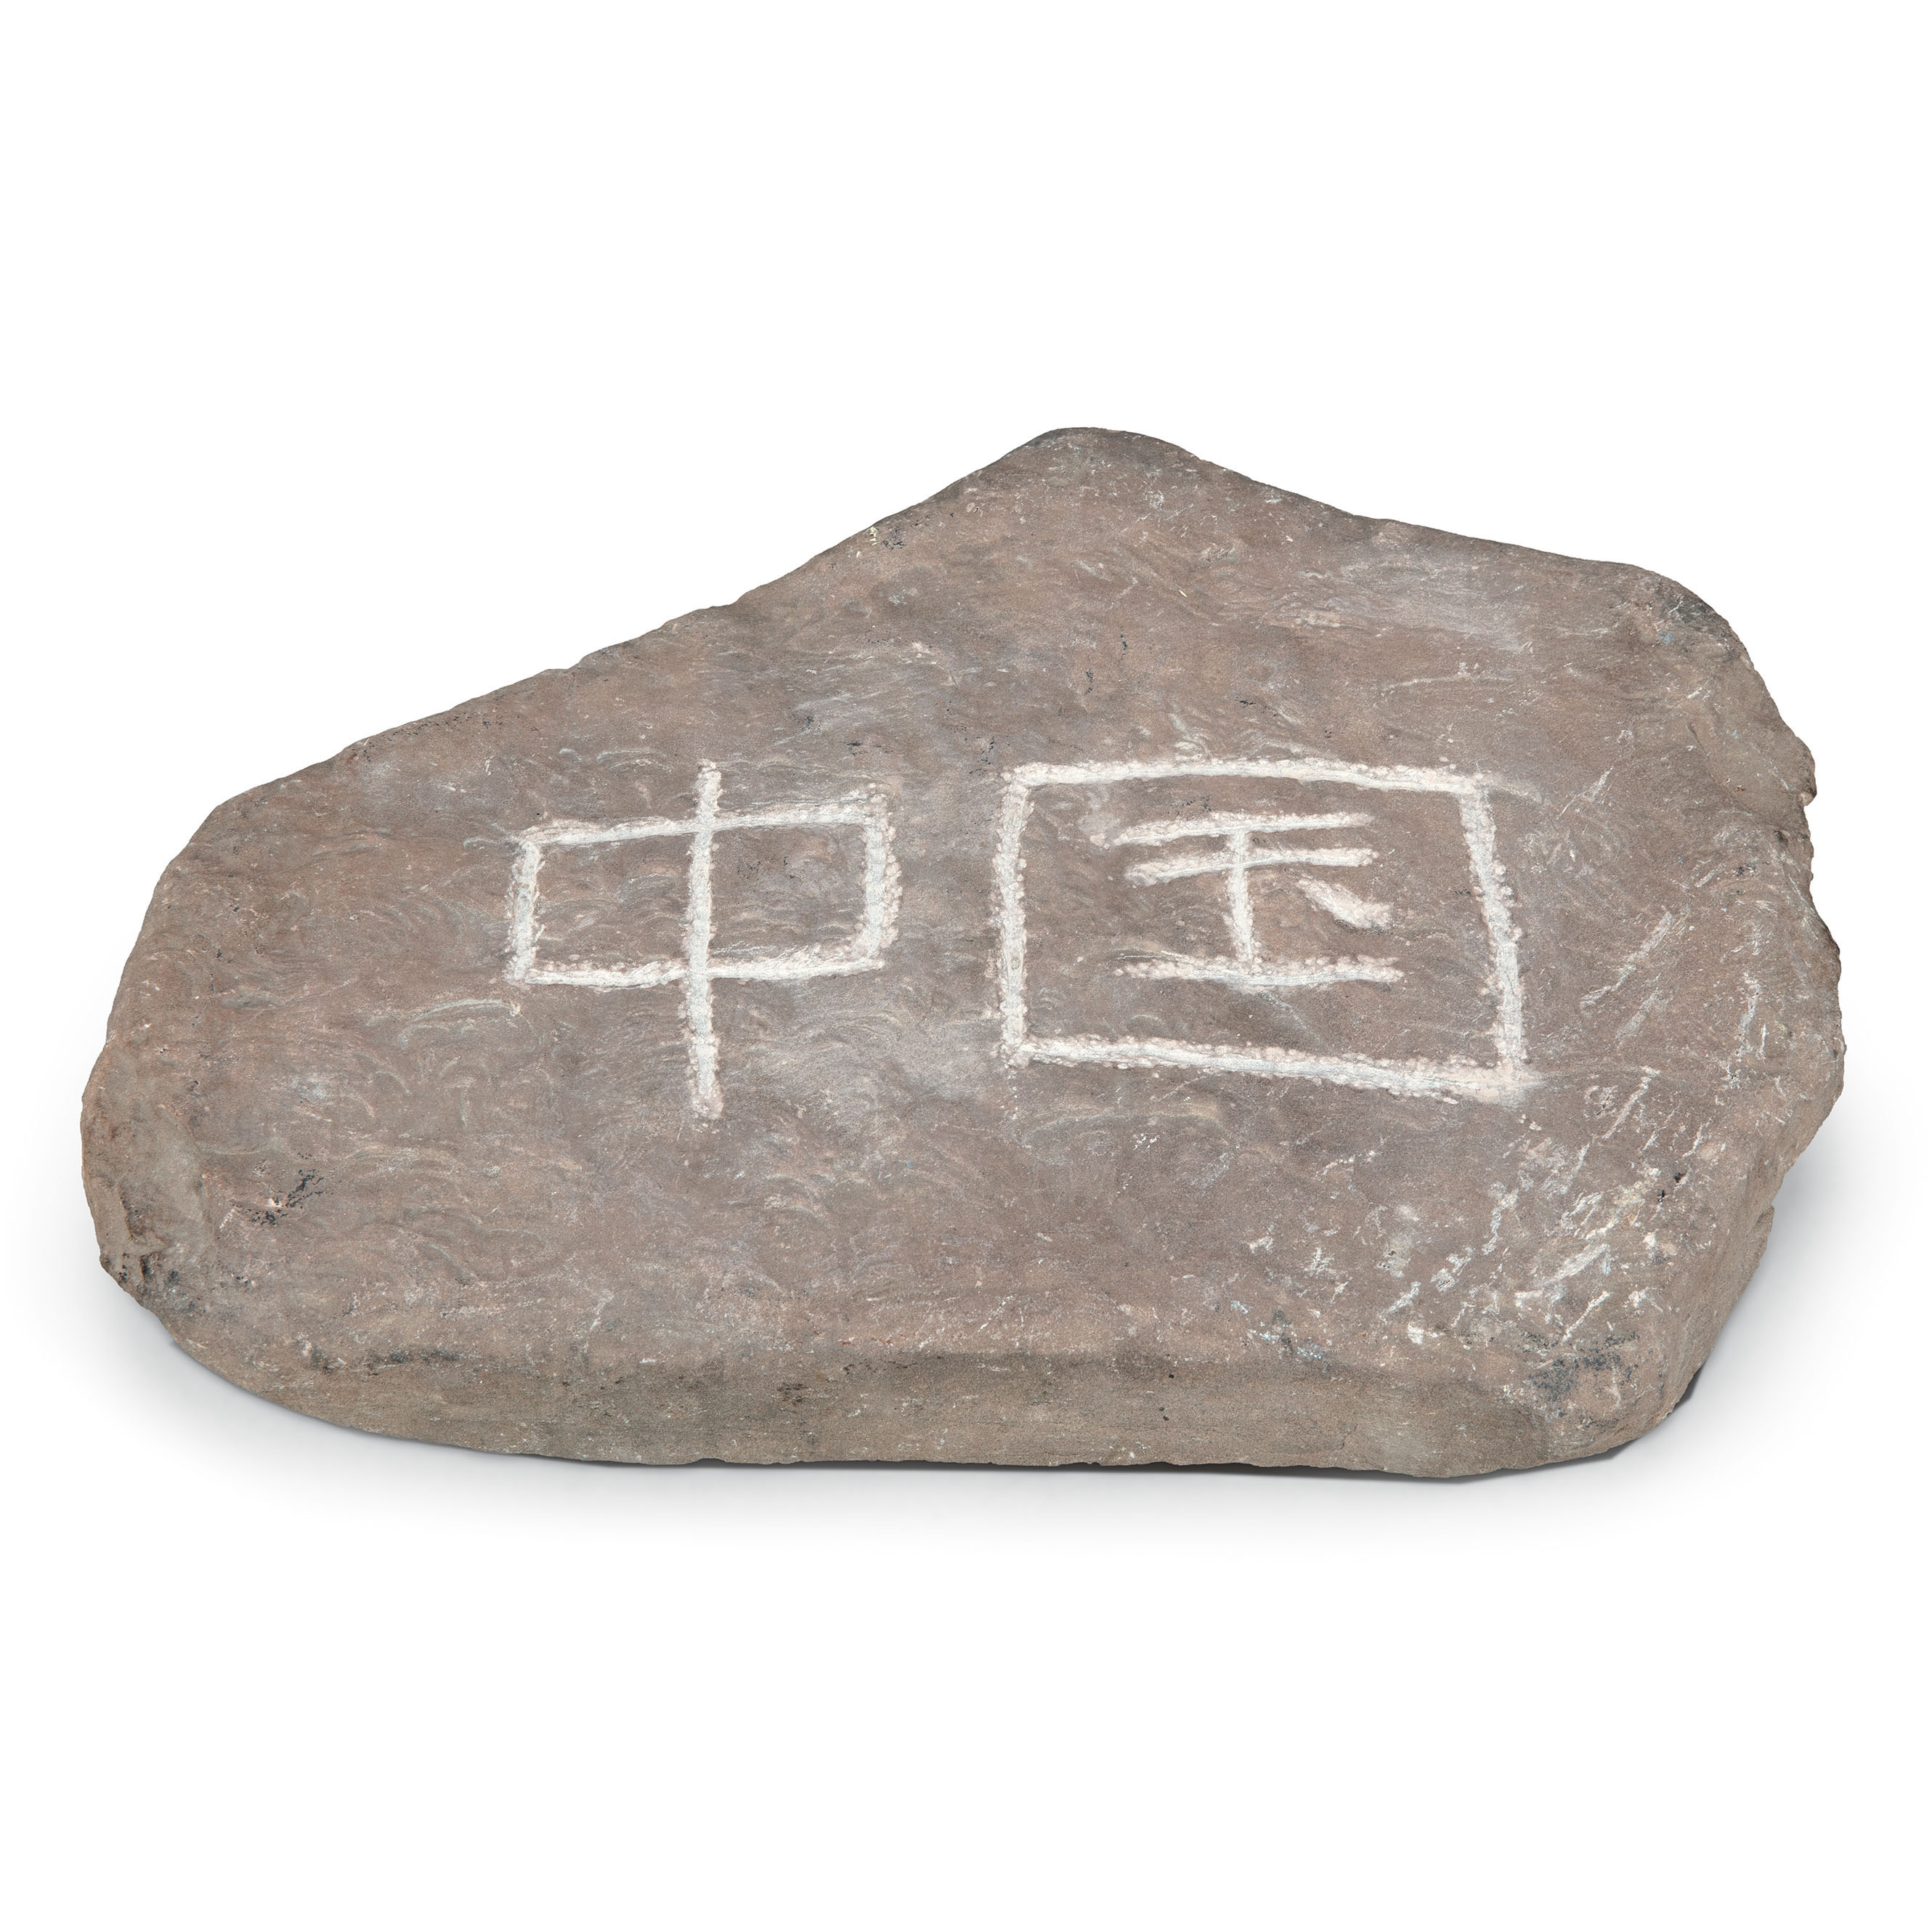 新疆护边员布茹玛汗·毛勒朵刻写的“中国石”